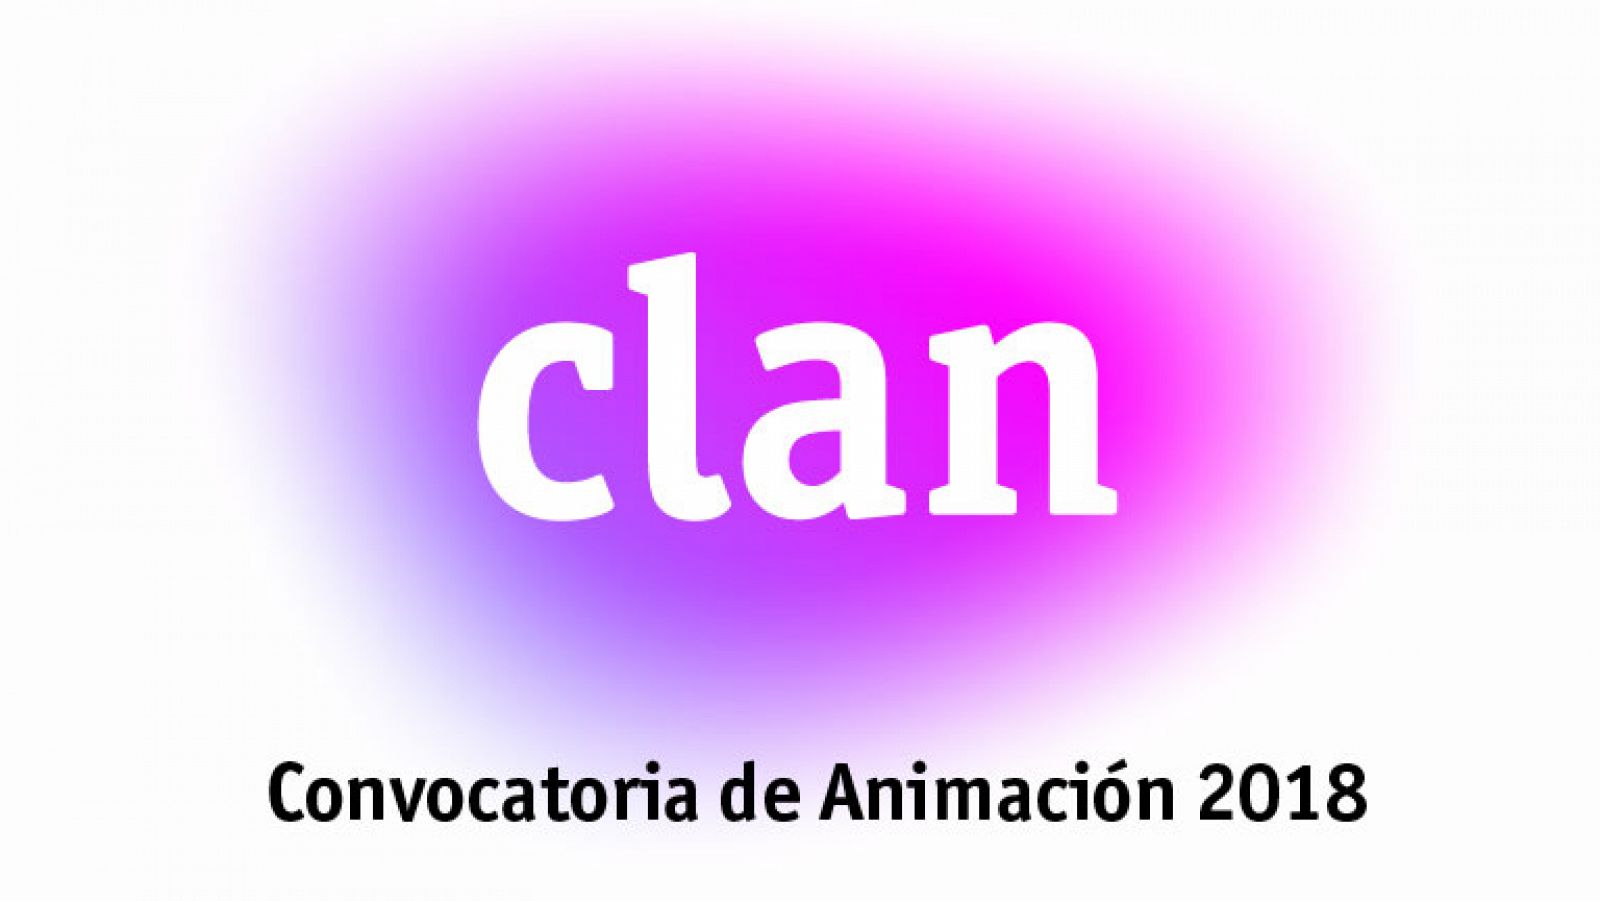 Convocatoria de Animación 2018 de RTVE